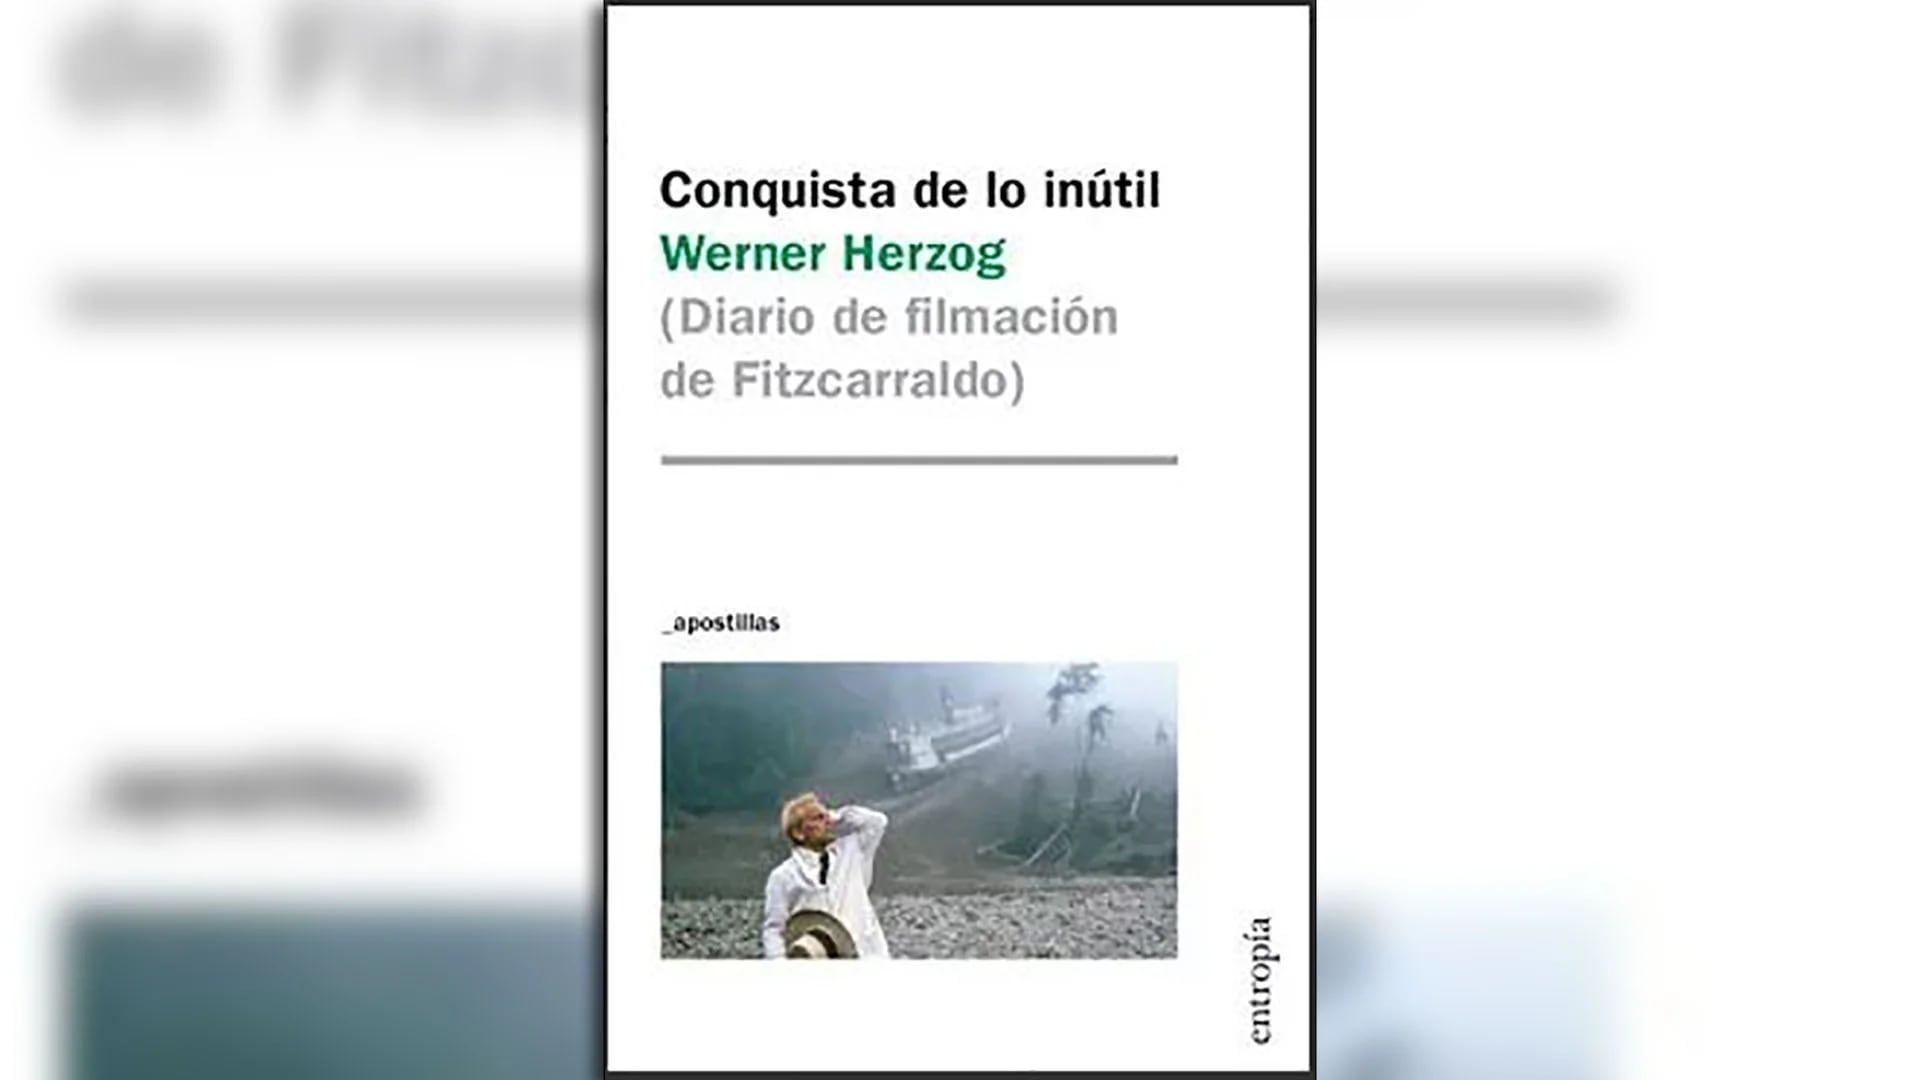 “Conquista de lo inútil (Diario de filmación de Fitzcarraldo)” (Entropía), de Werner Herzog